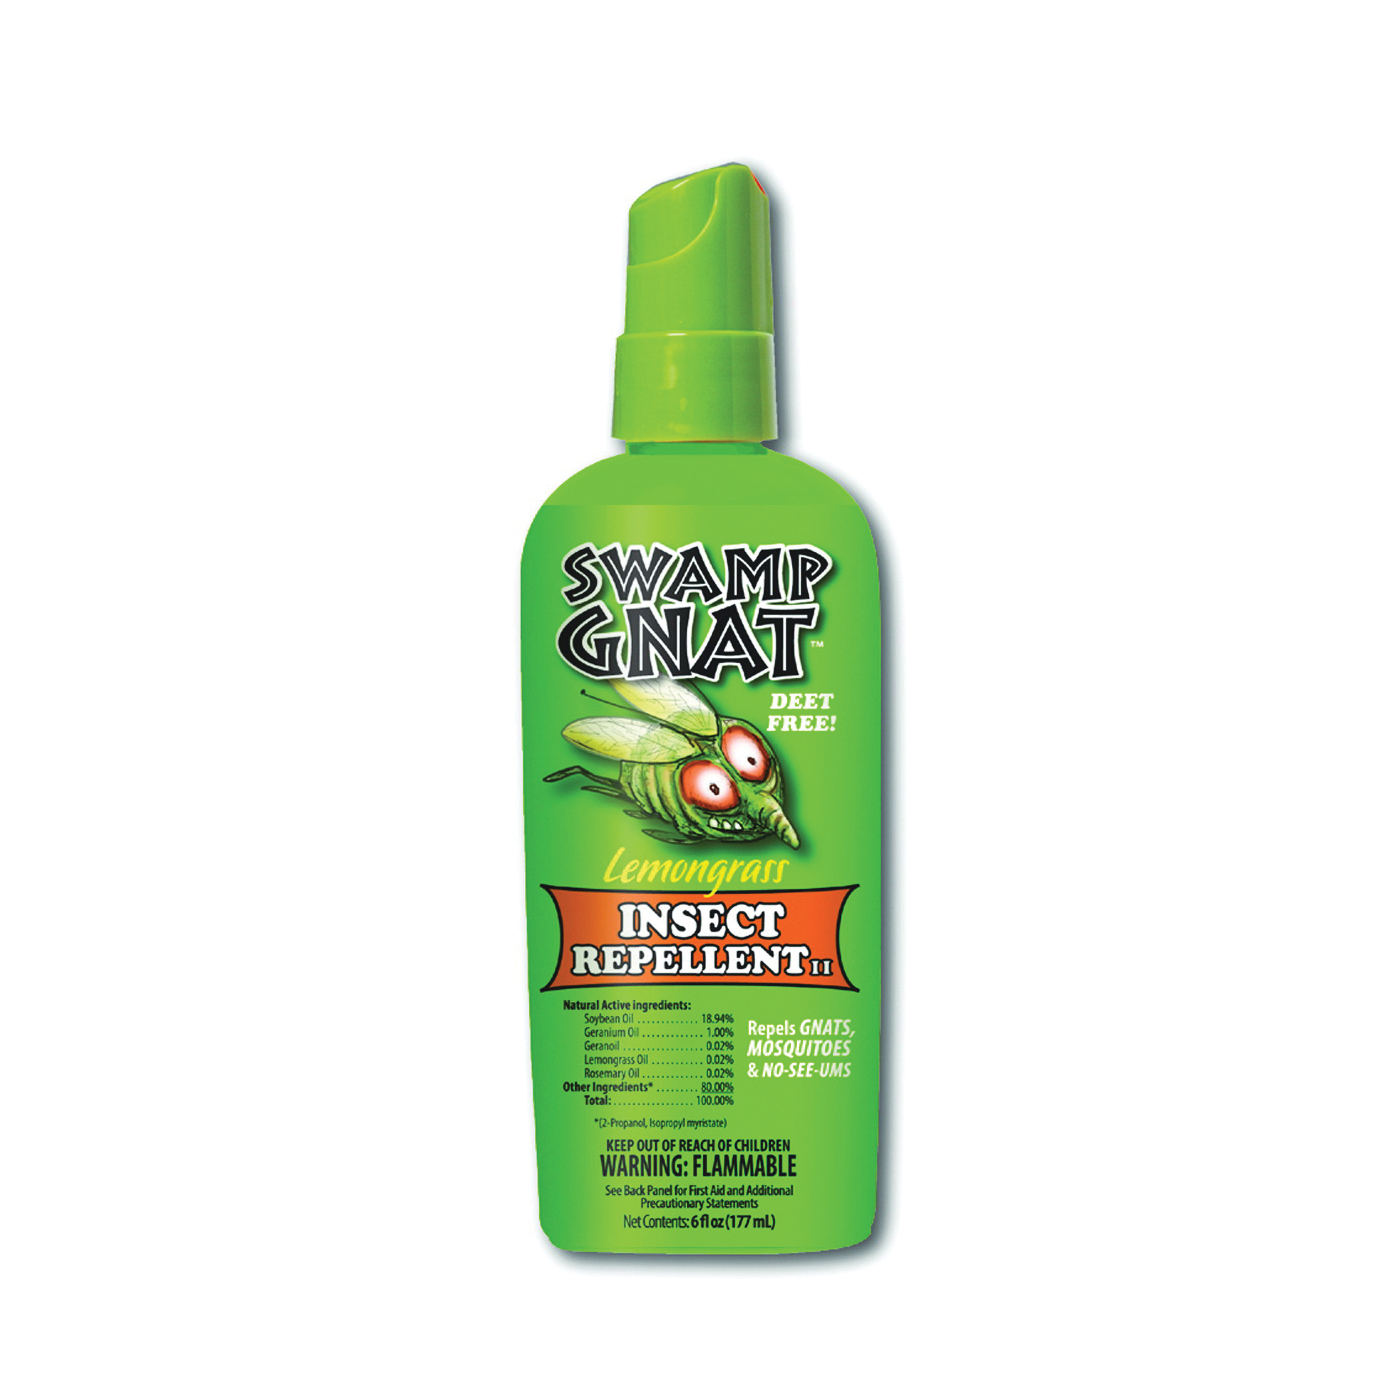 Swamp Gnat SNAT-6 Insect Repellent, Liquid, Lemongrass